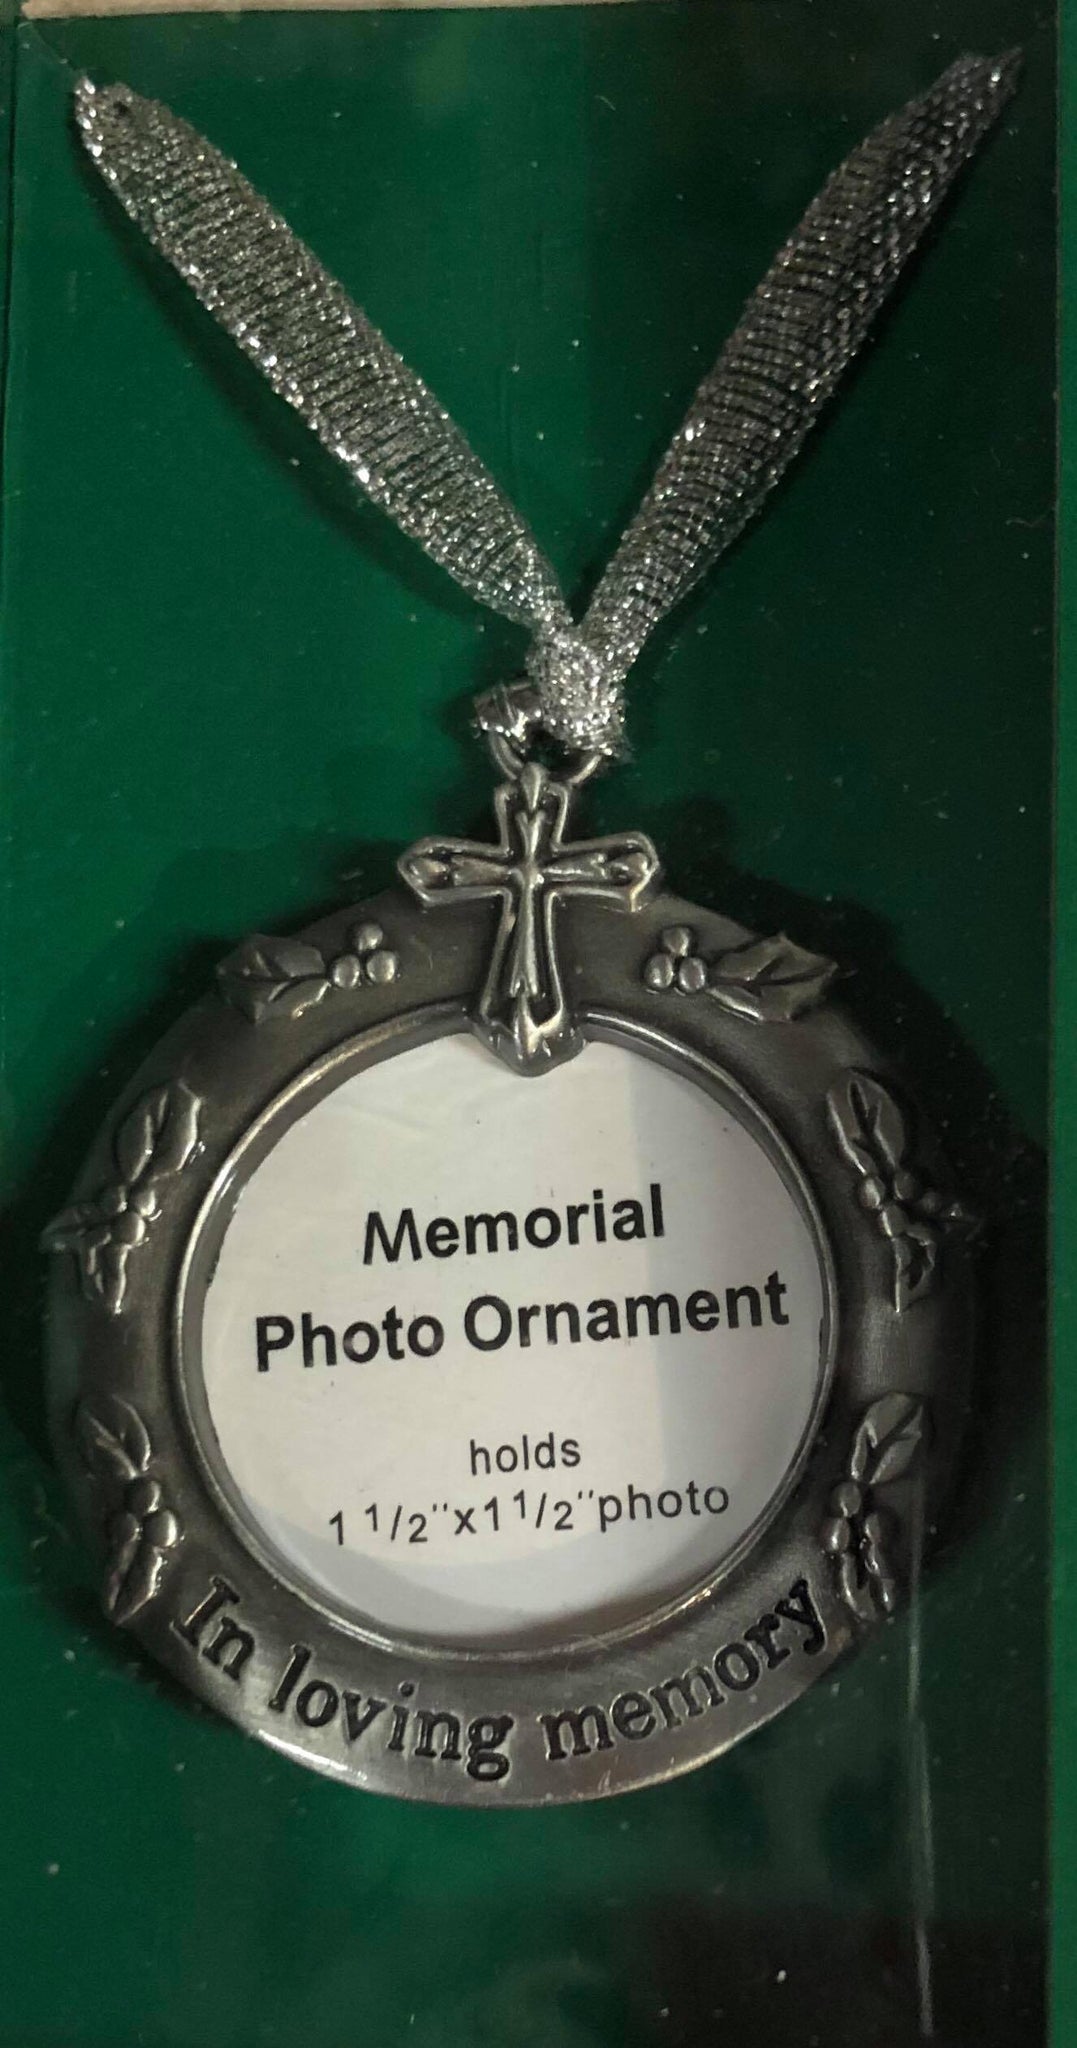 Memorial Tree Ornament "In Loving Memory"